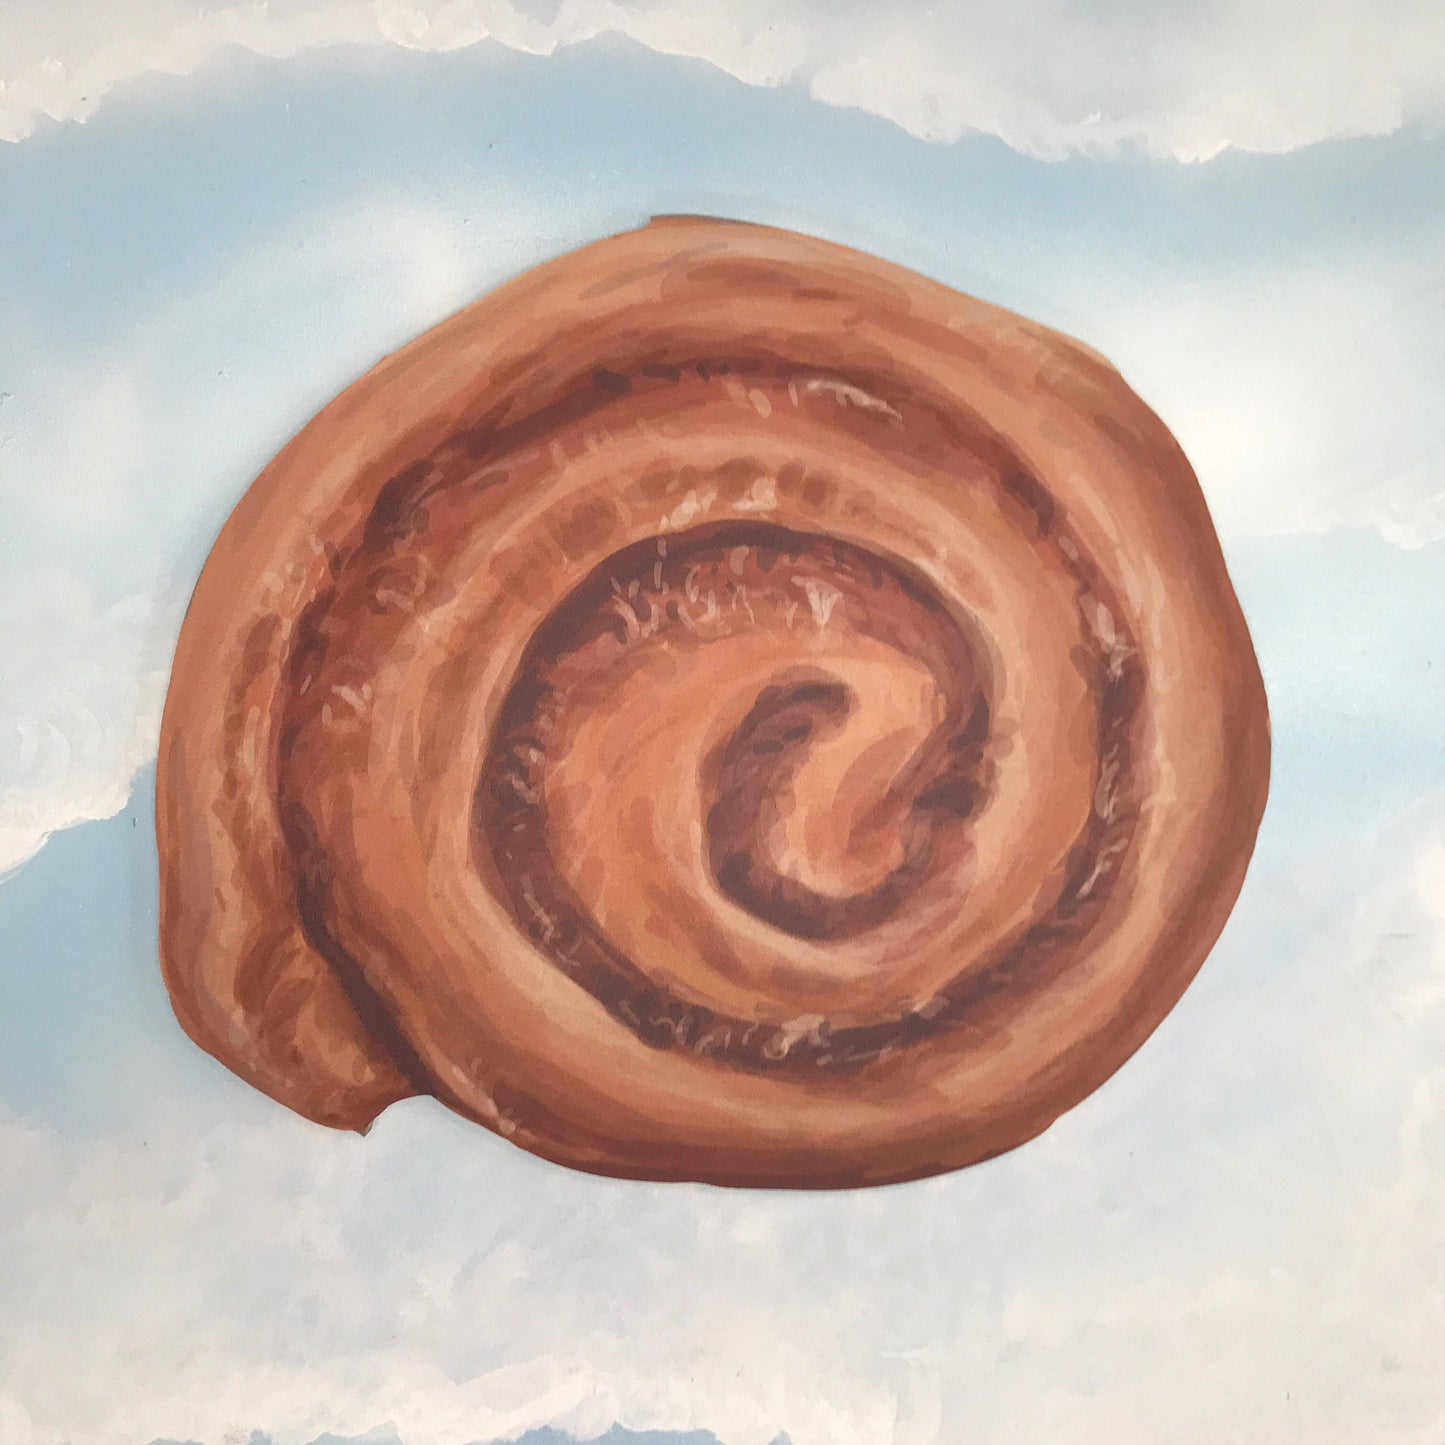 Oversized Cinnamon Swirl Bun